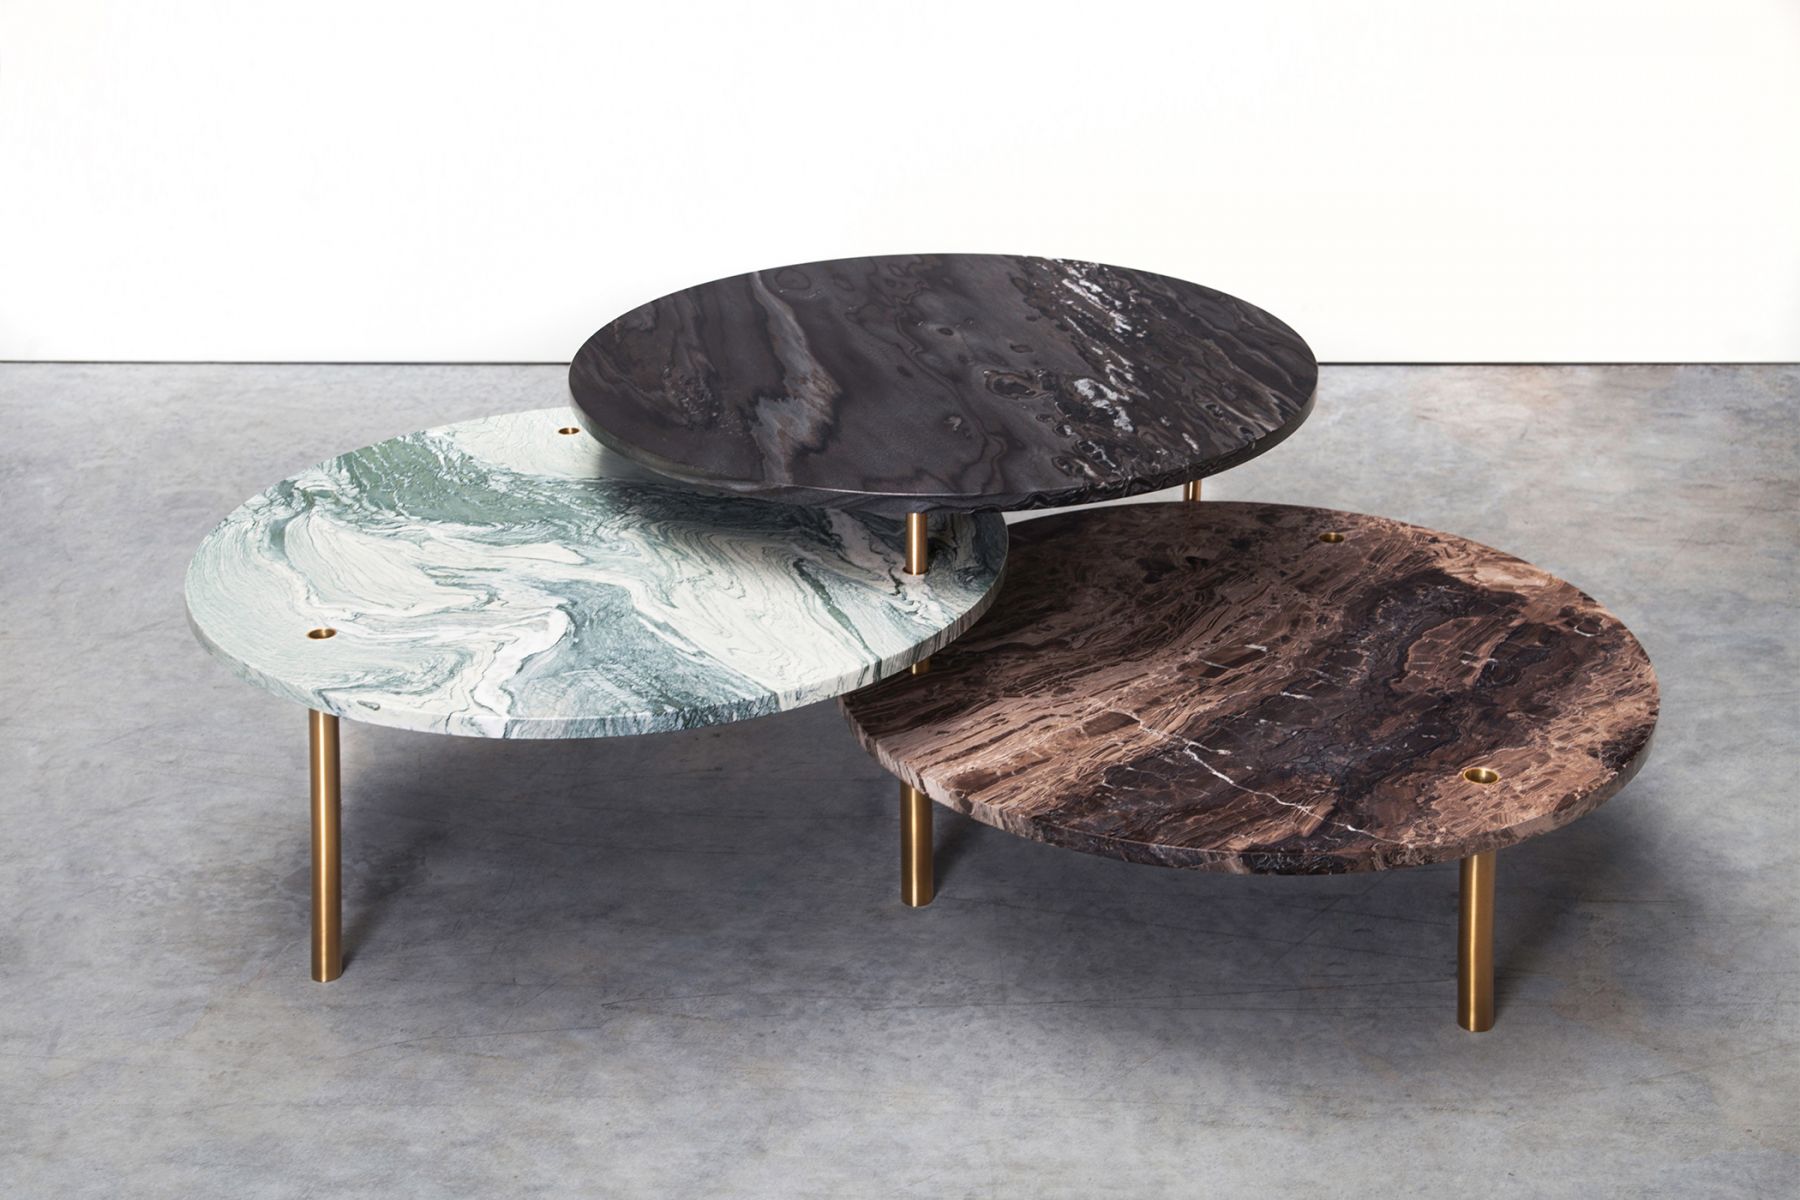 Low table 'Tectonic' Maarten De Ceulaer pic-1